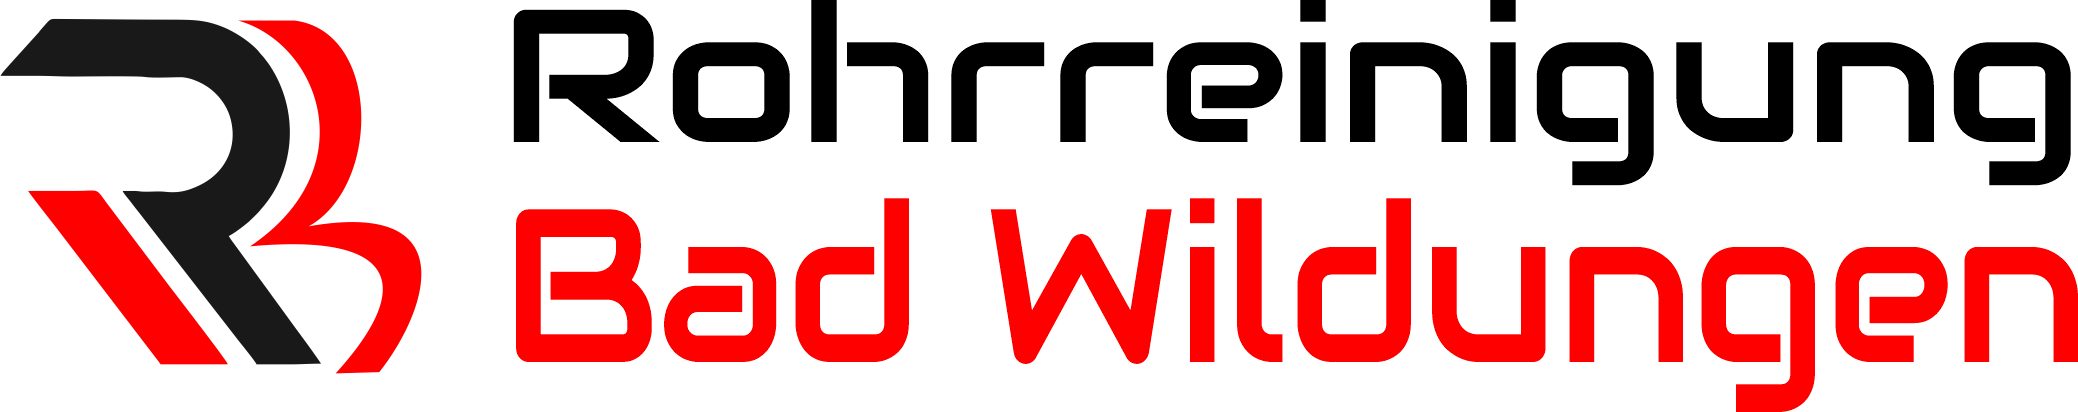 Rohrreinigung Bad Wildungen Logo